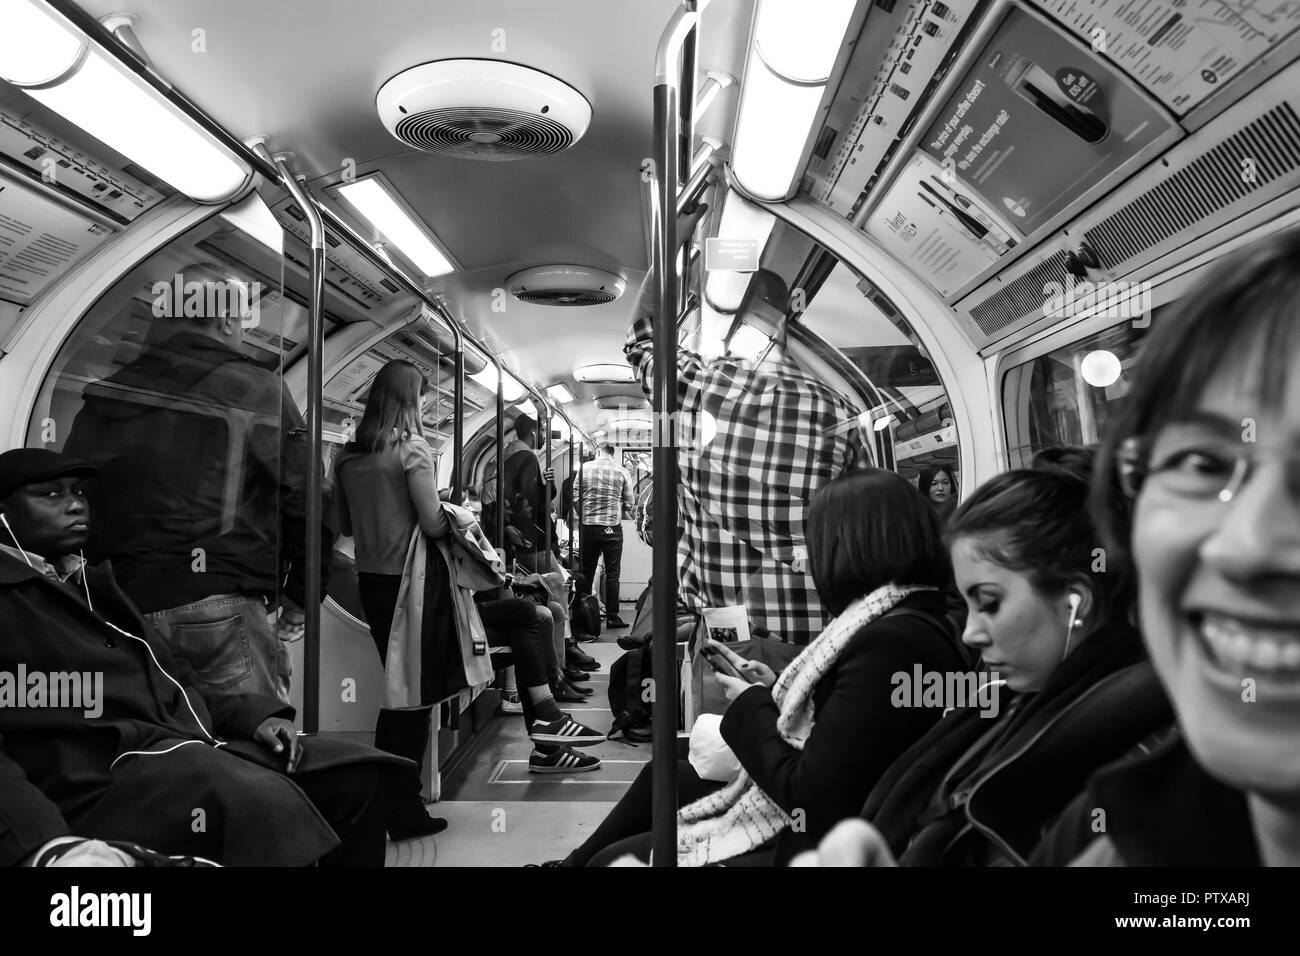 Schwarz & Weiß schoss der Fahrgäste in London das Rohr innerhalb des langen Waggon. Pendler Stehen und Sitzen ohne Interaktion; Spot der Tourist, der lächelt. Stockfoto